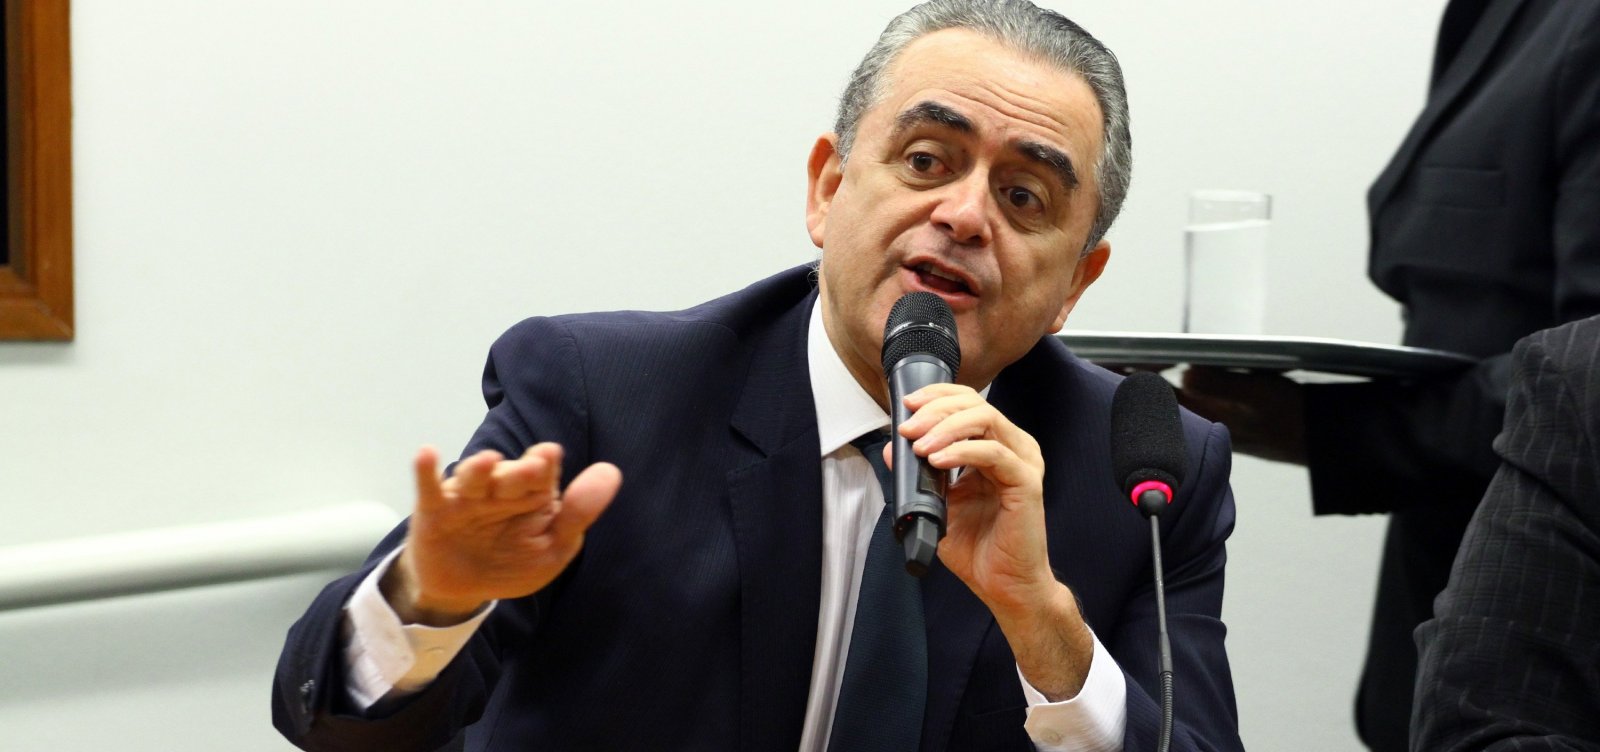 Morre deputado federal Luiz Flávio Gomes, aos 62 anos